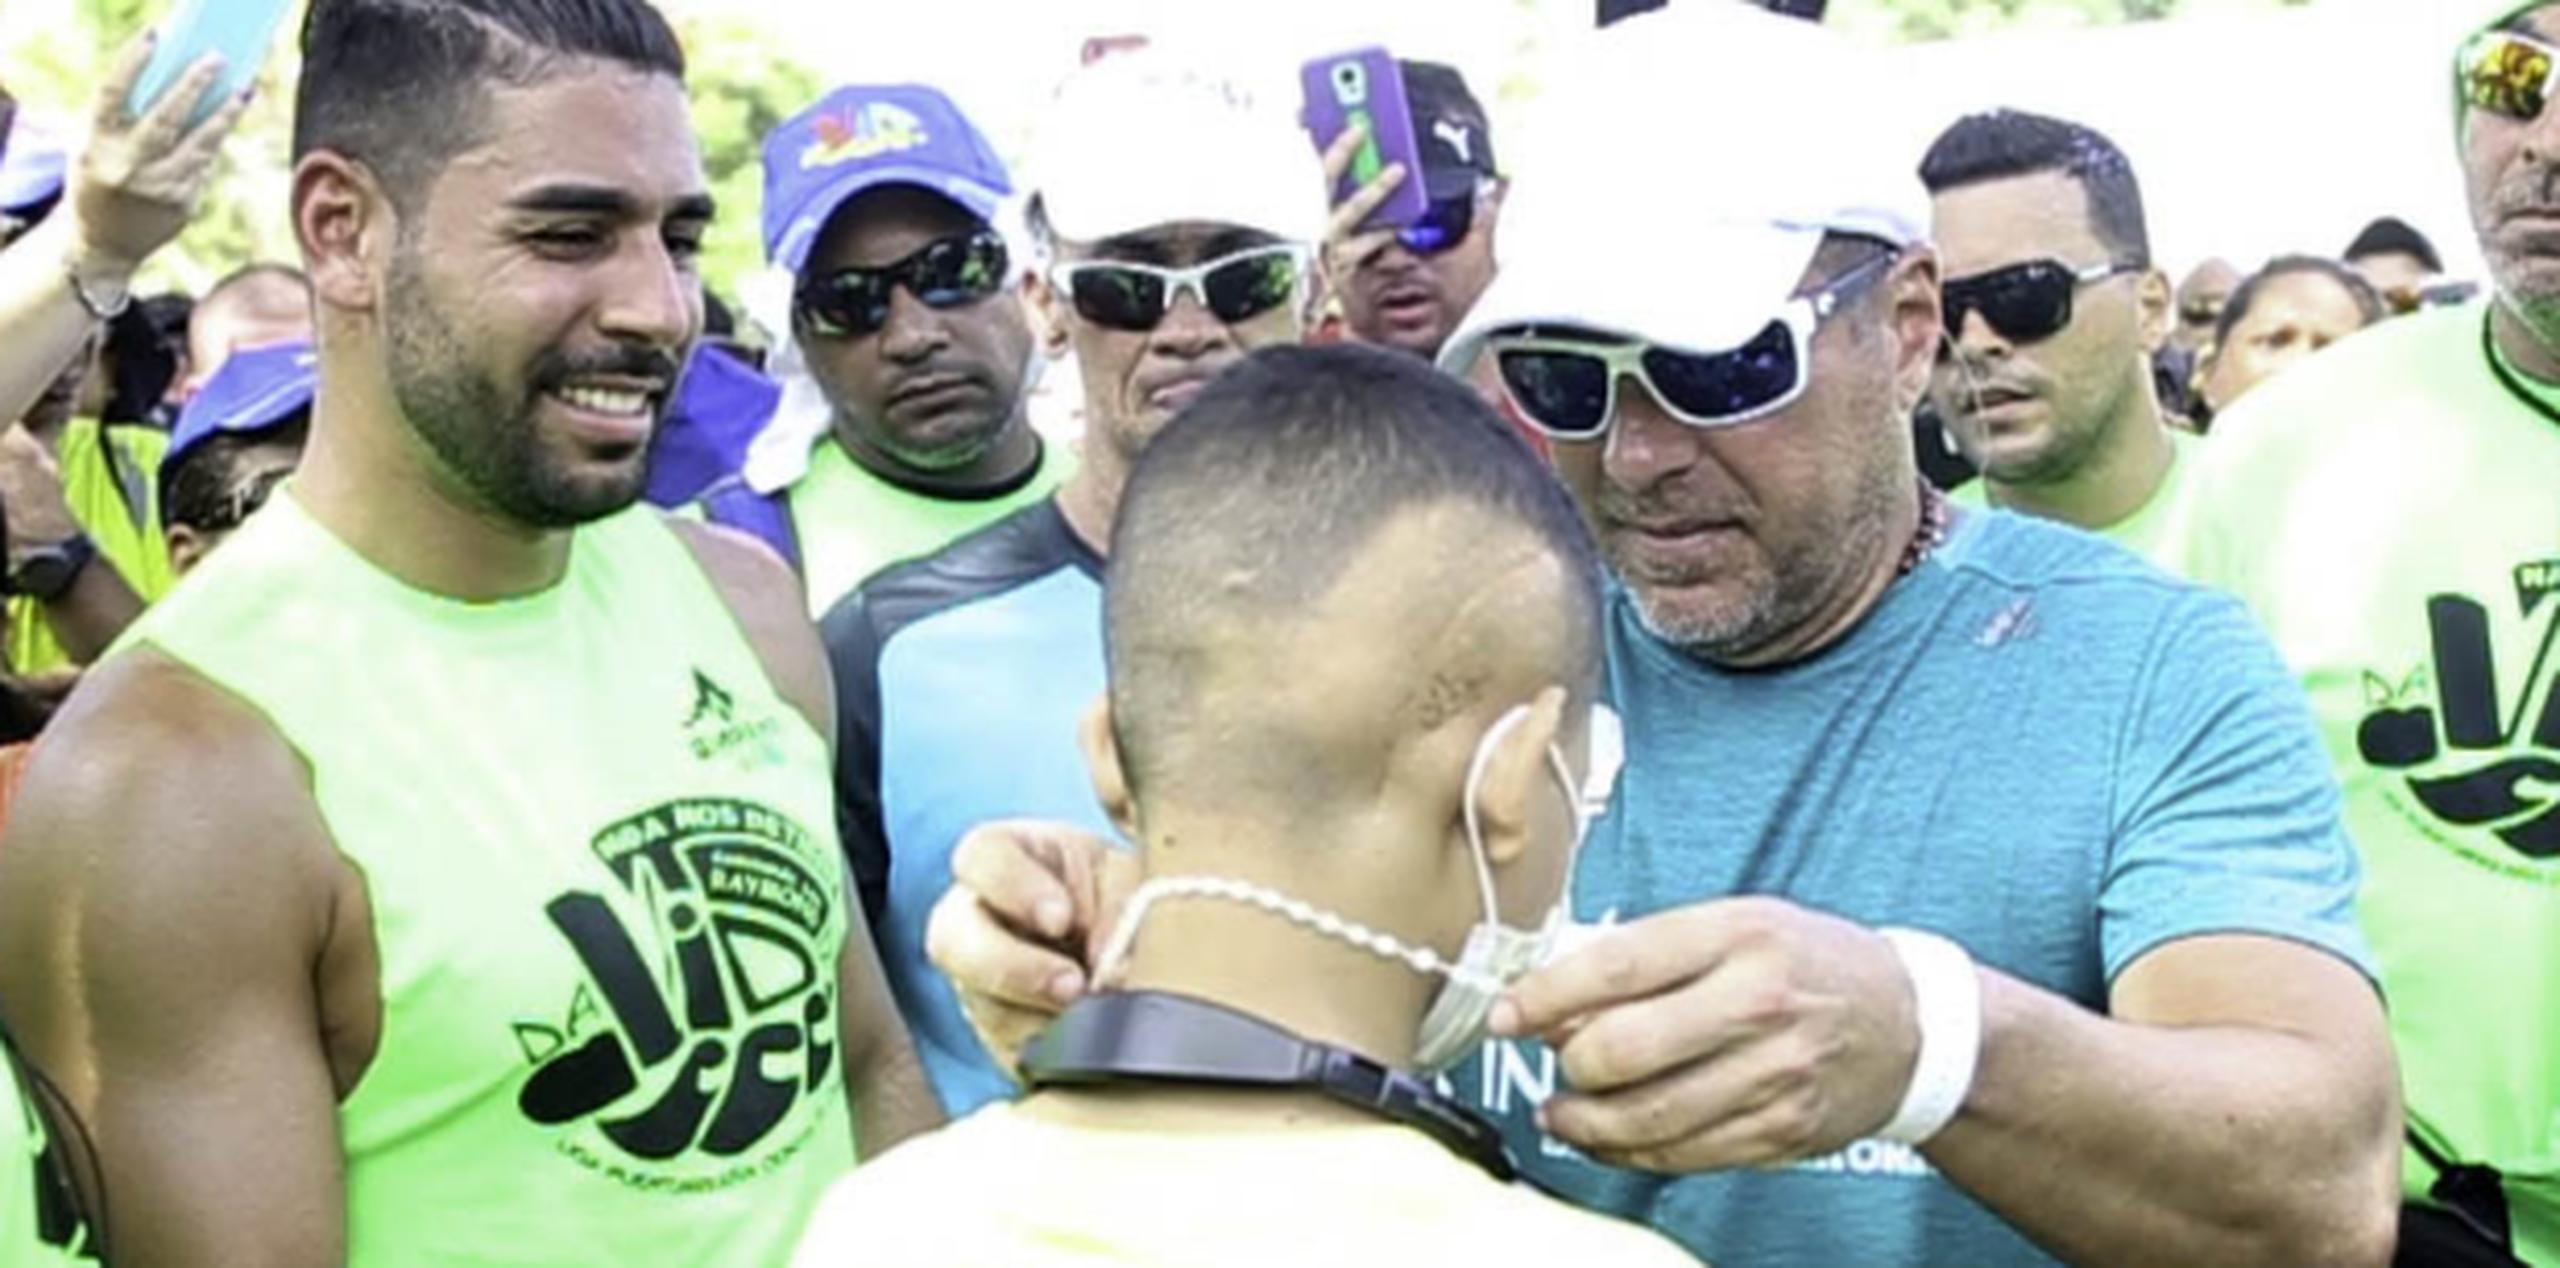 Raymond Arrieta le coloca un rosario a un niño paciente de cáncer con el que compartió en su caminata. (Especialpara PrimeraHora/JuanLuisValentín)